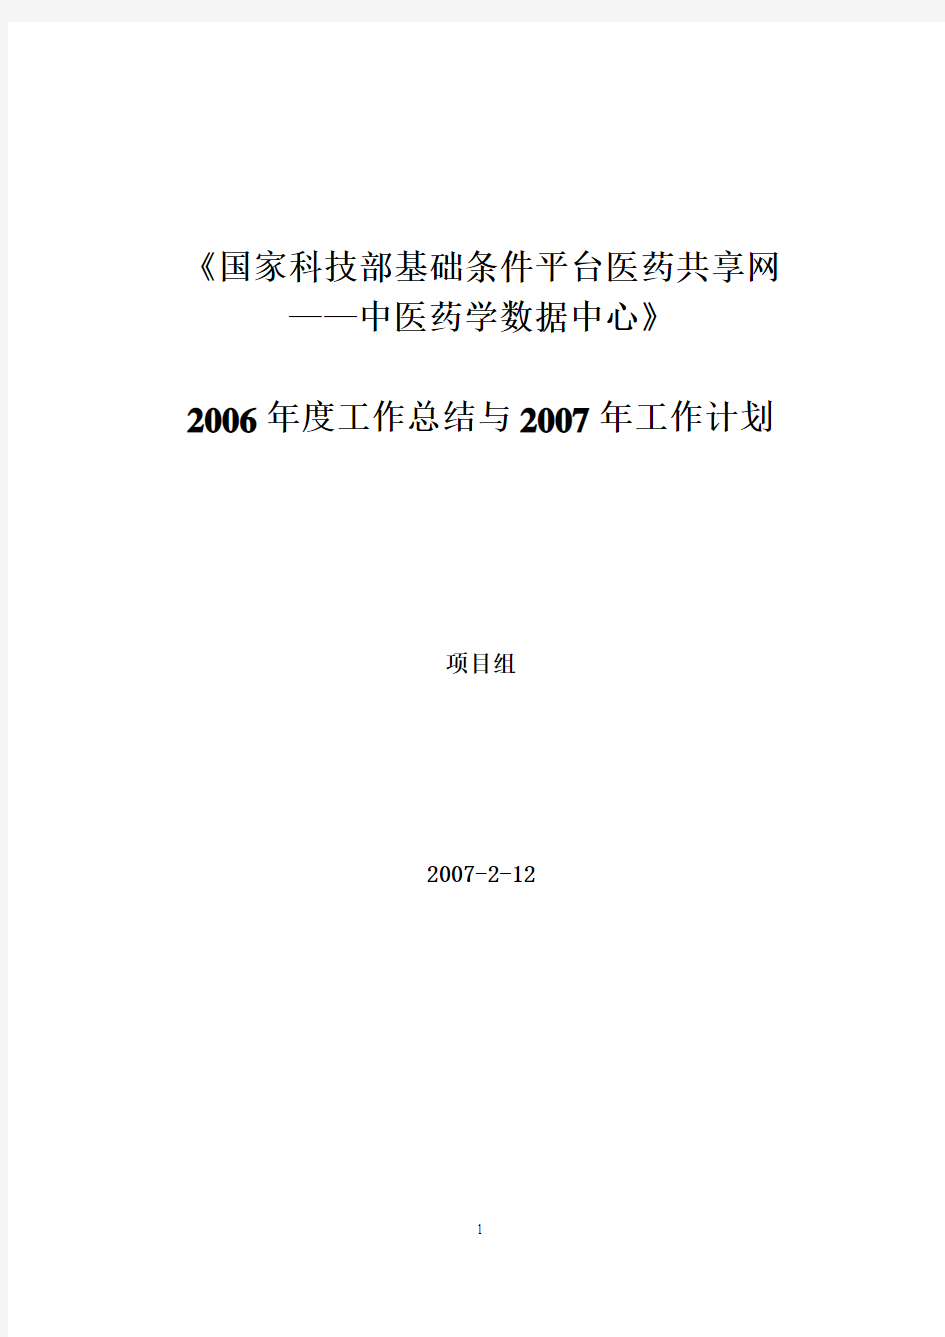 2006年度工作总结与2007年工作计划